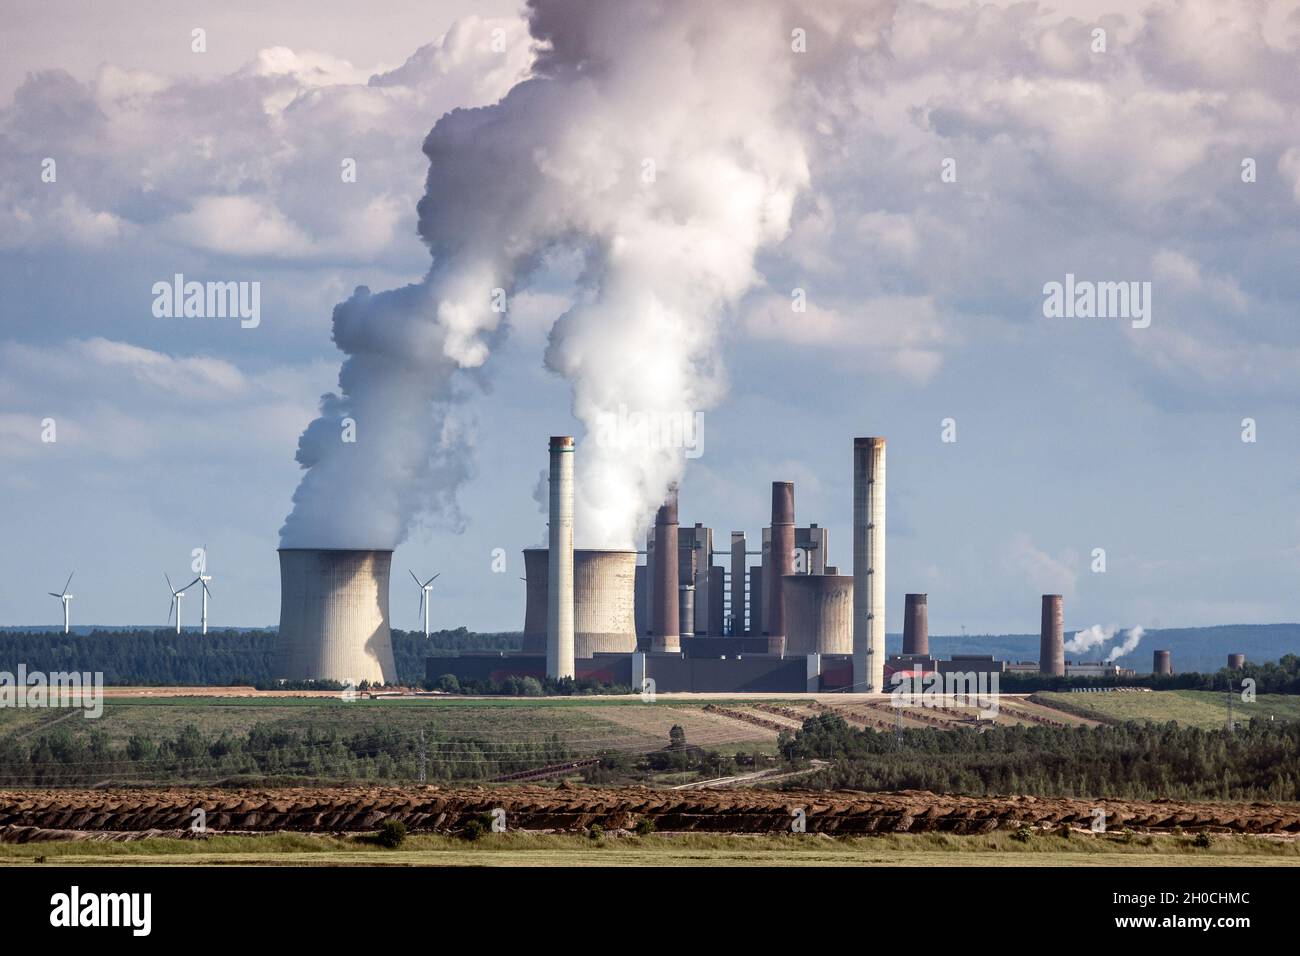 Les émissions des cheminées de l'usine de production d'énergie causent la pollution de l'air Banque D'Images